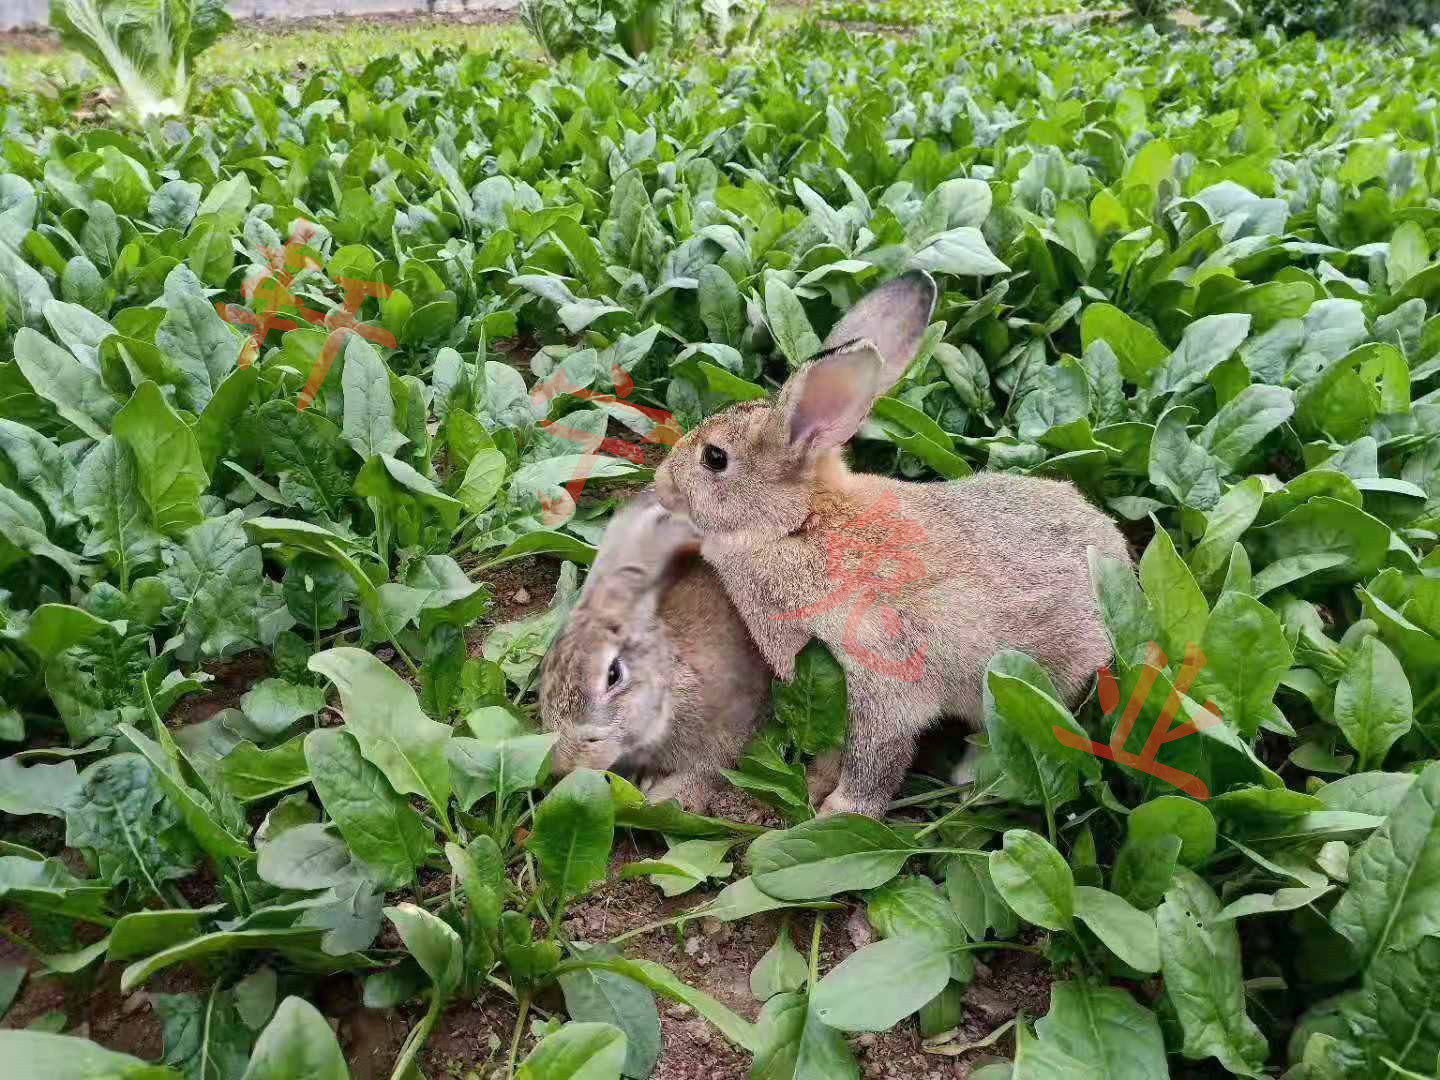 种兔獭兔肉兔养殖免费技术支持 烤兔子技术教授【山东轩宁珍禽养殖有限公司】